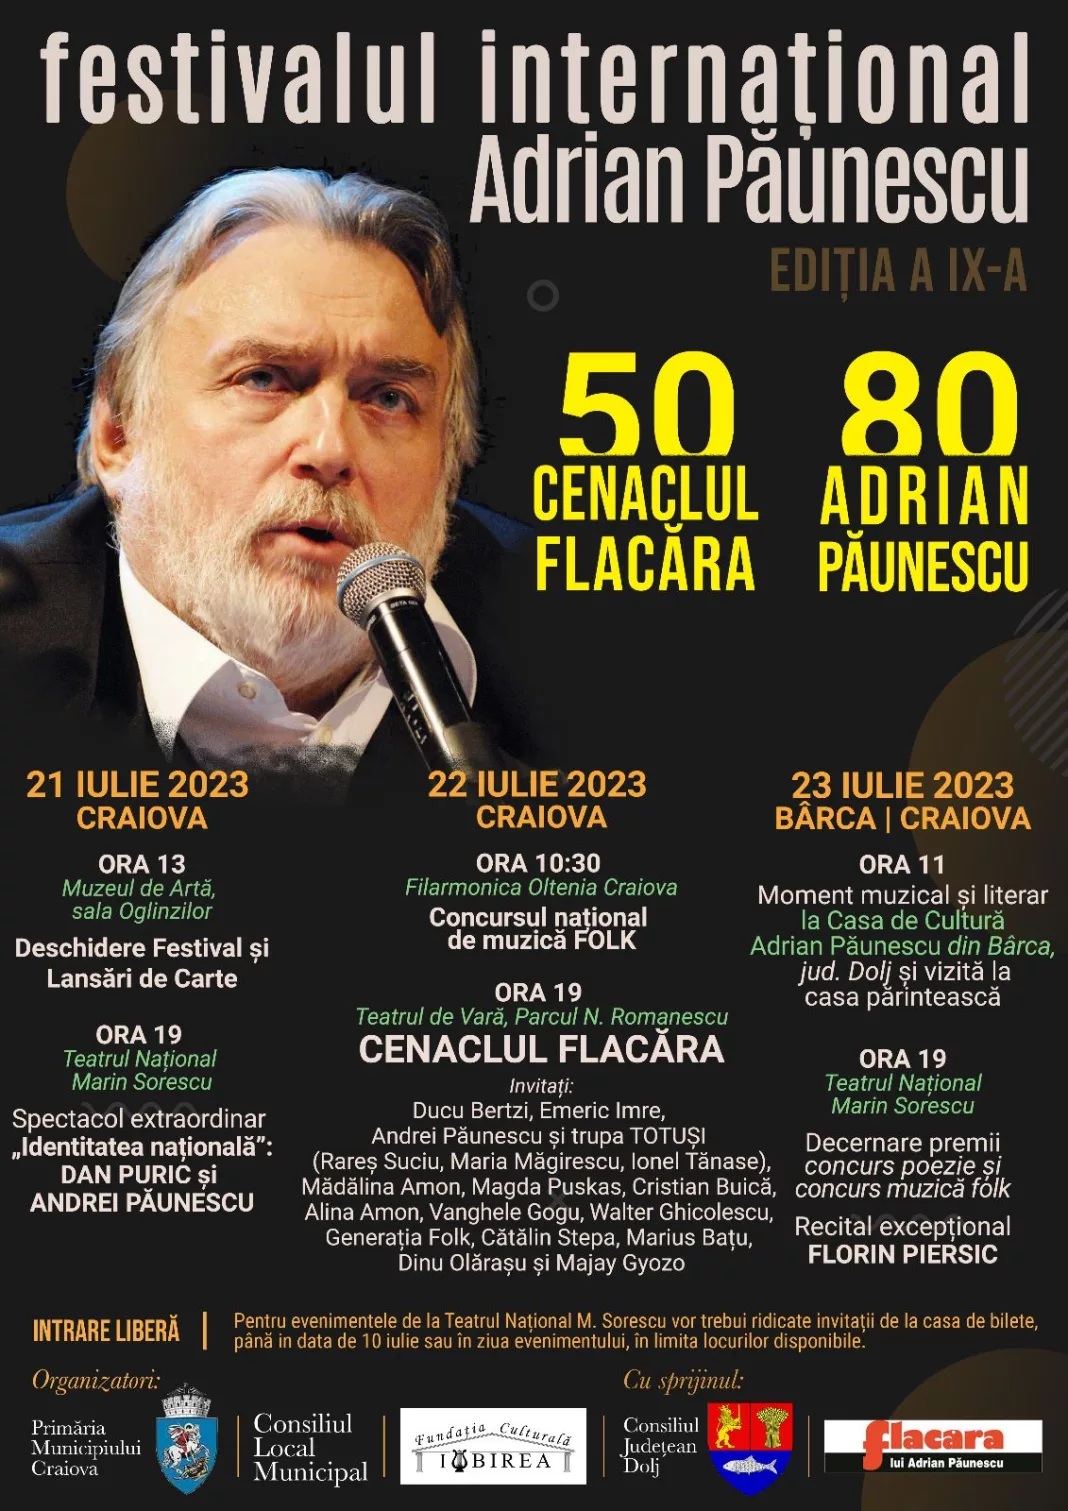 Festivalul Internațional Adrian Păunescu se desfășoară la Craiova între 21 - 23 iulie